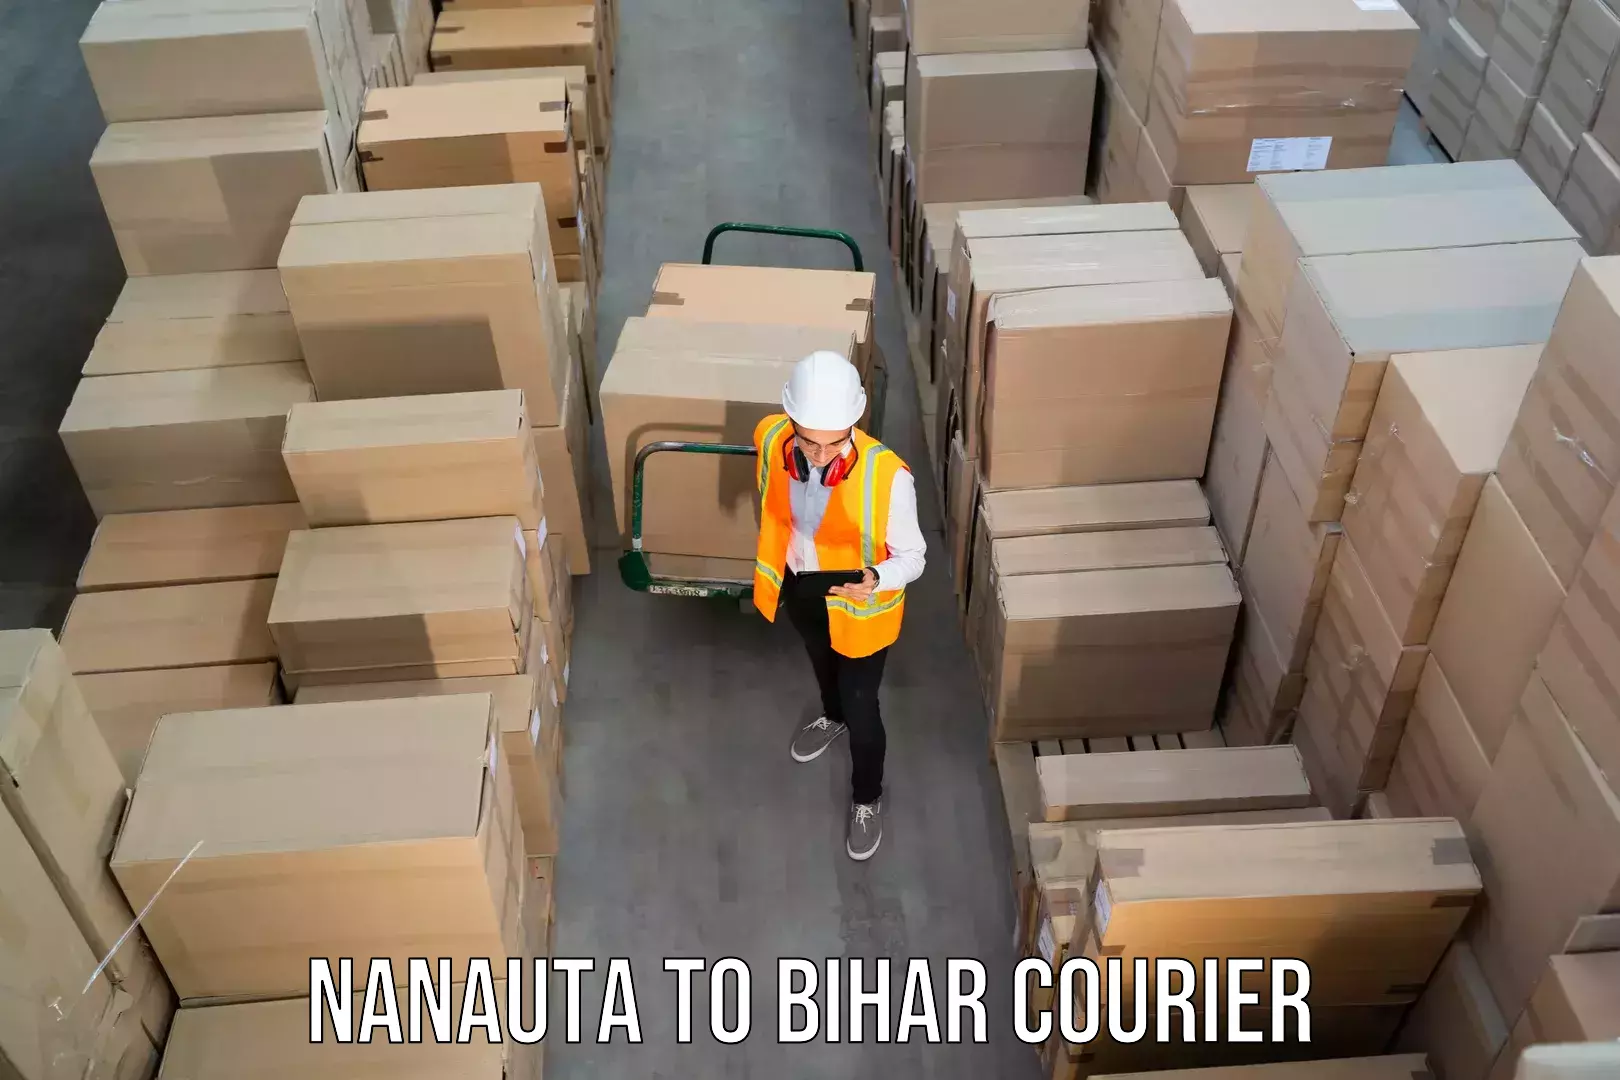 Fast delivery service Nanauta to Bihar